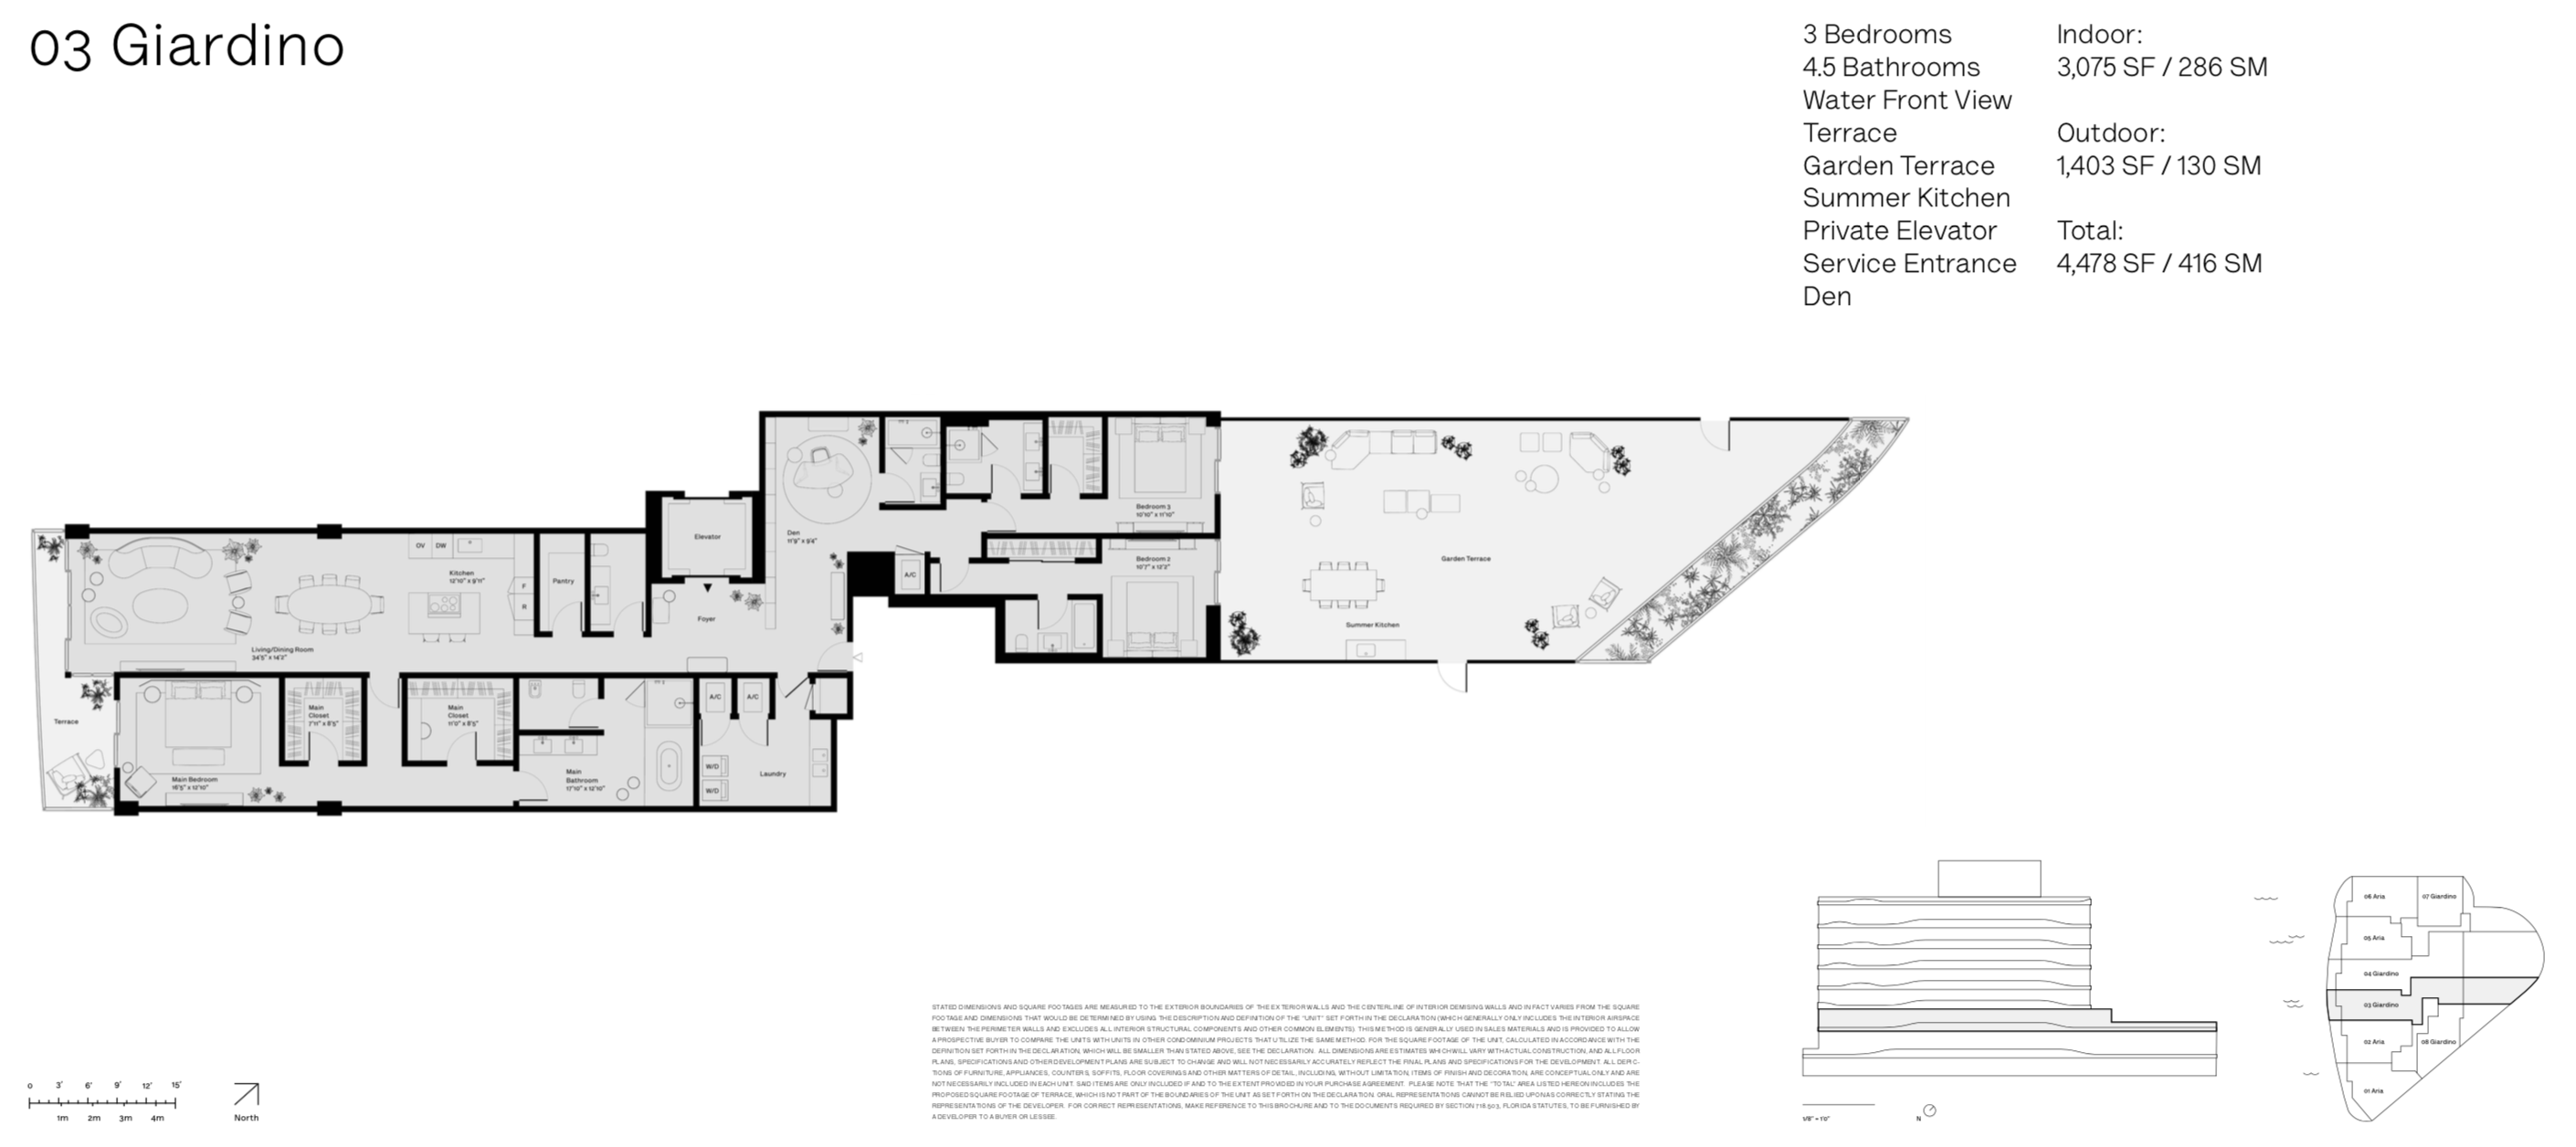 Onda Residences | Giardino 03 Line |  Floor 3 | 3 Be + Den | 4.5 Ba | Waterviews | 3,075 SF | Private elevator | Service Entrance  | Garden Terrace | Summer Kitchen